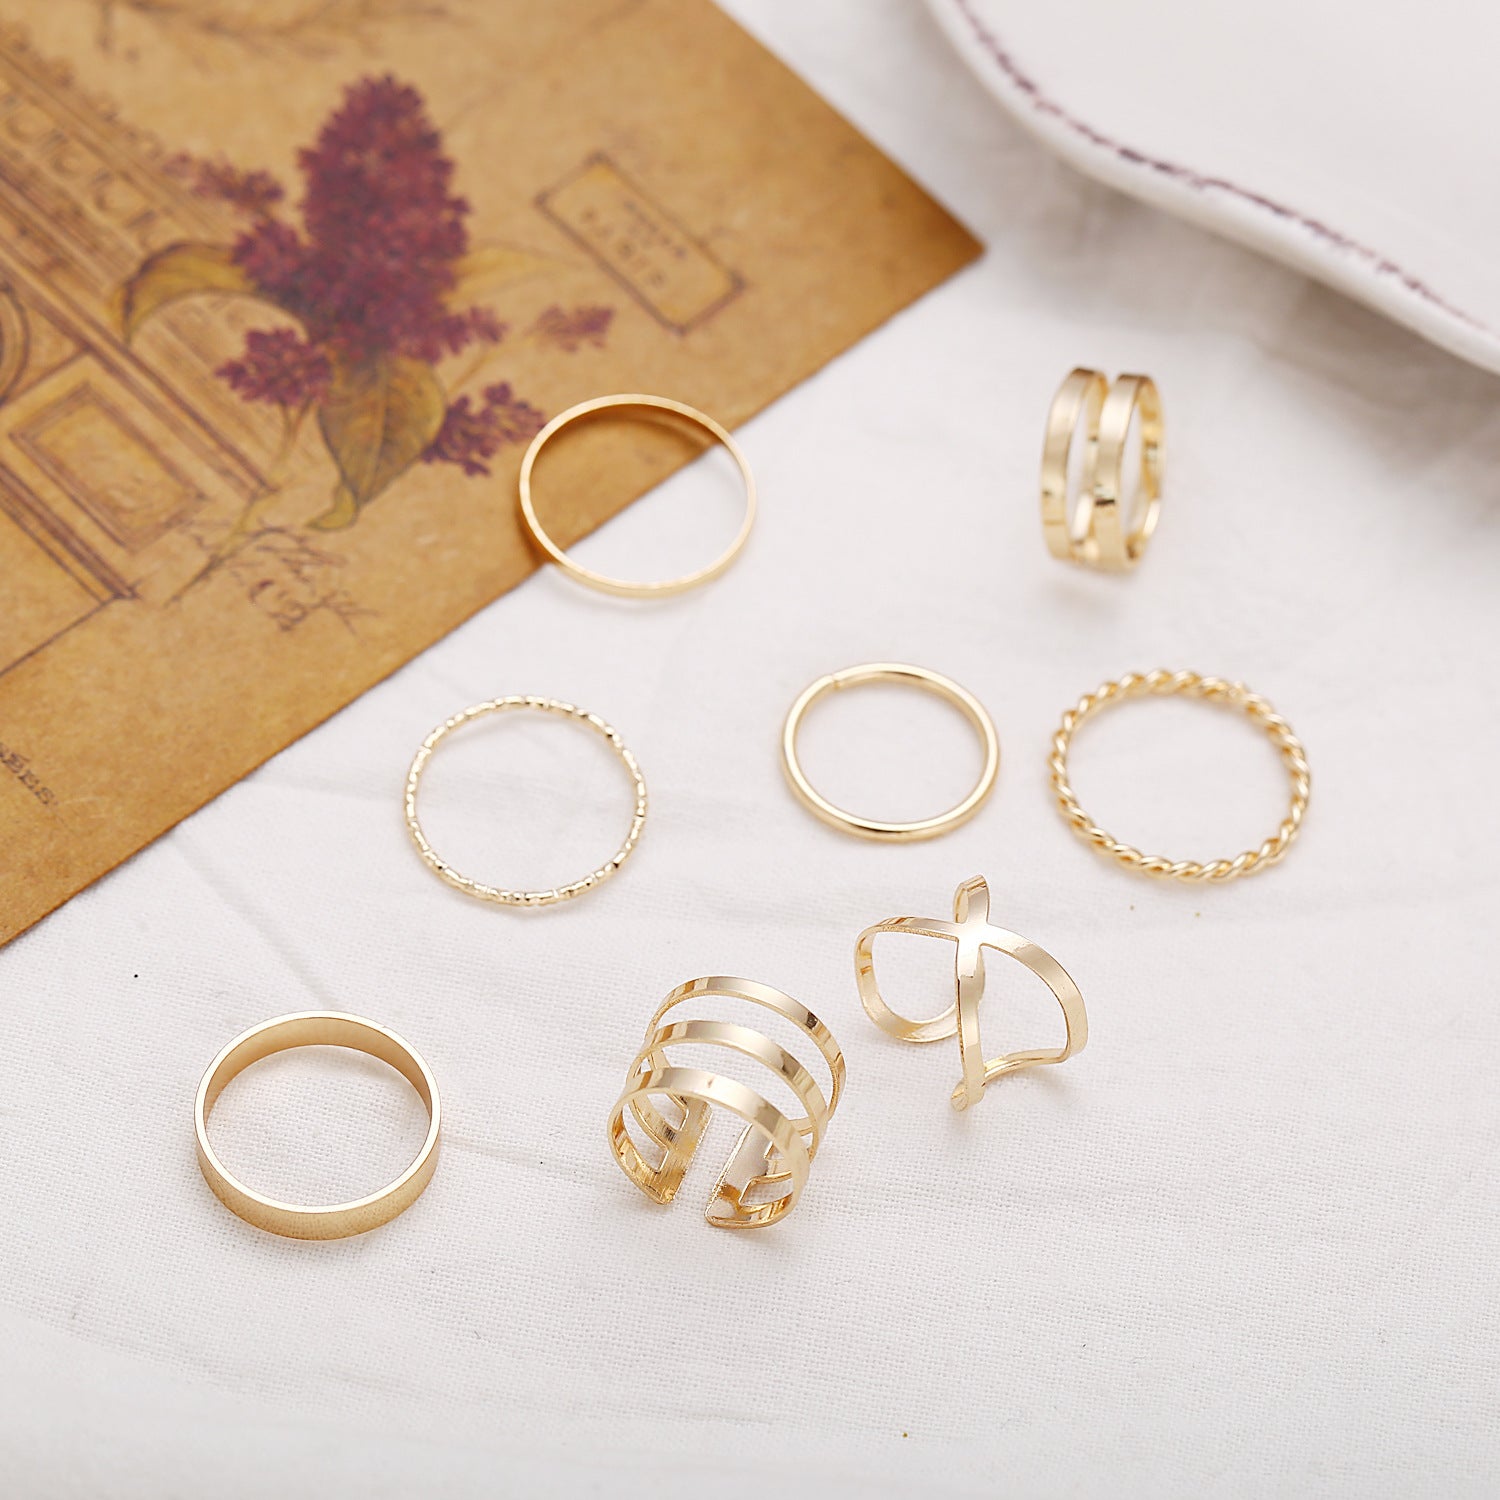 White Gold Aesthetic Ring Set 6pcs – Vanity Island Magazine